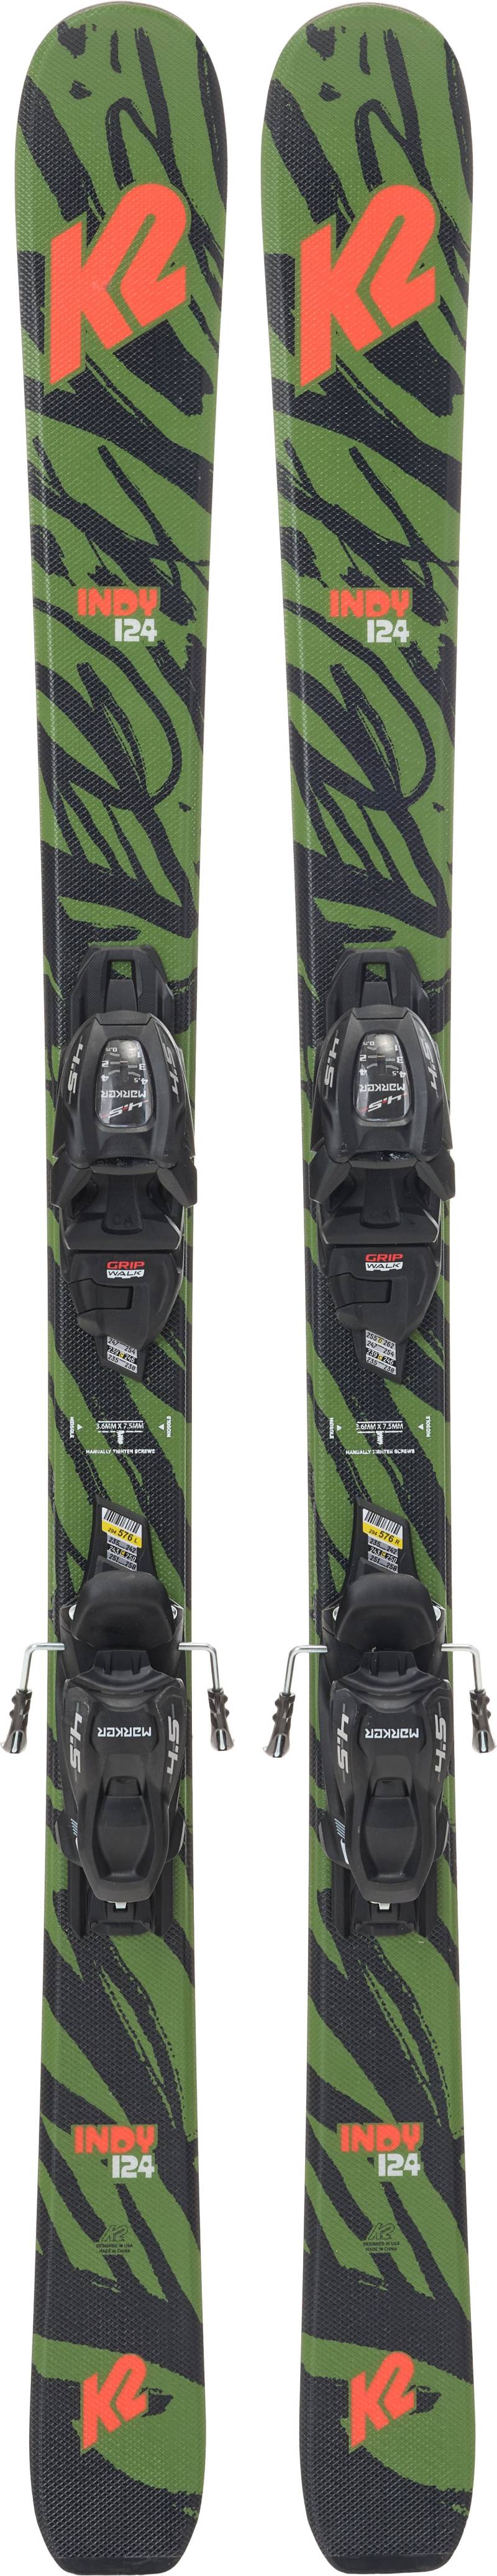 K2 Indy Fdt 4.5 Skier inkl. Bindungen, 124 cm von K2